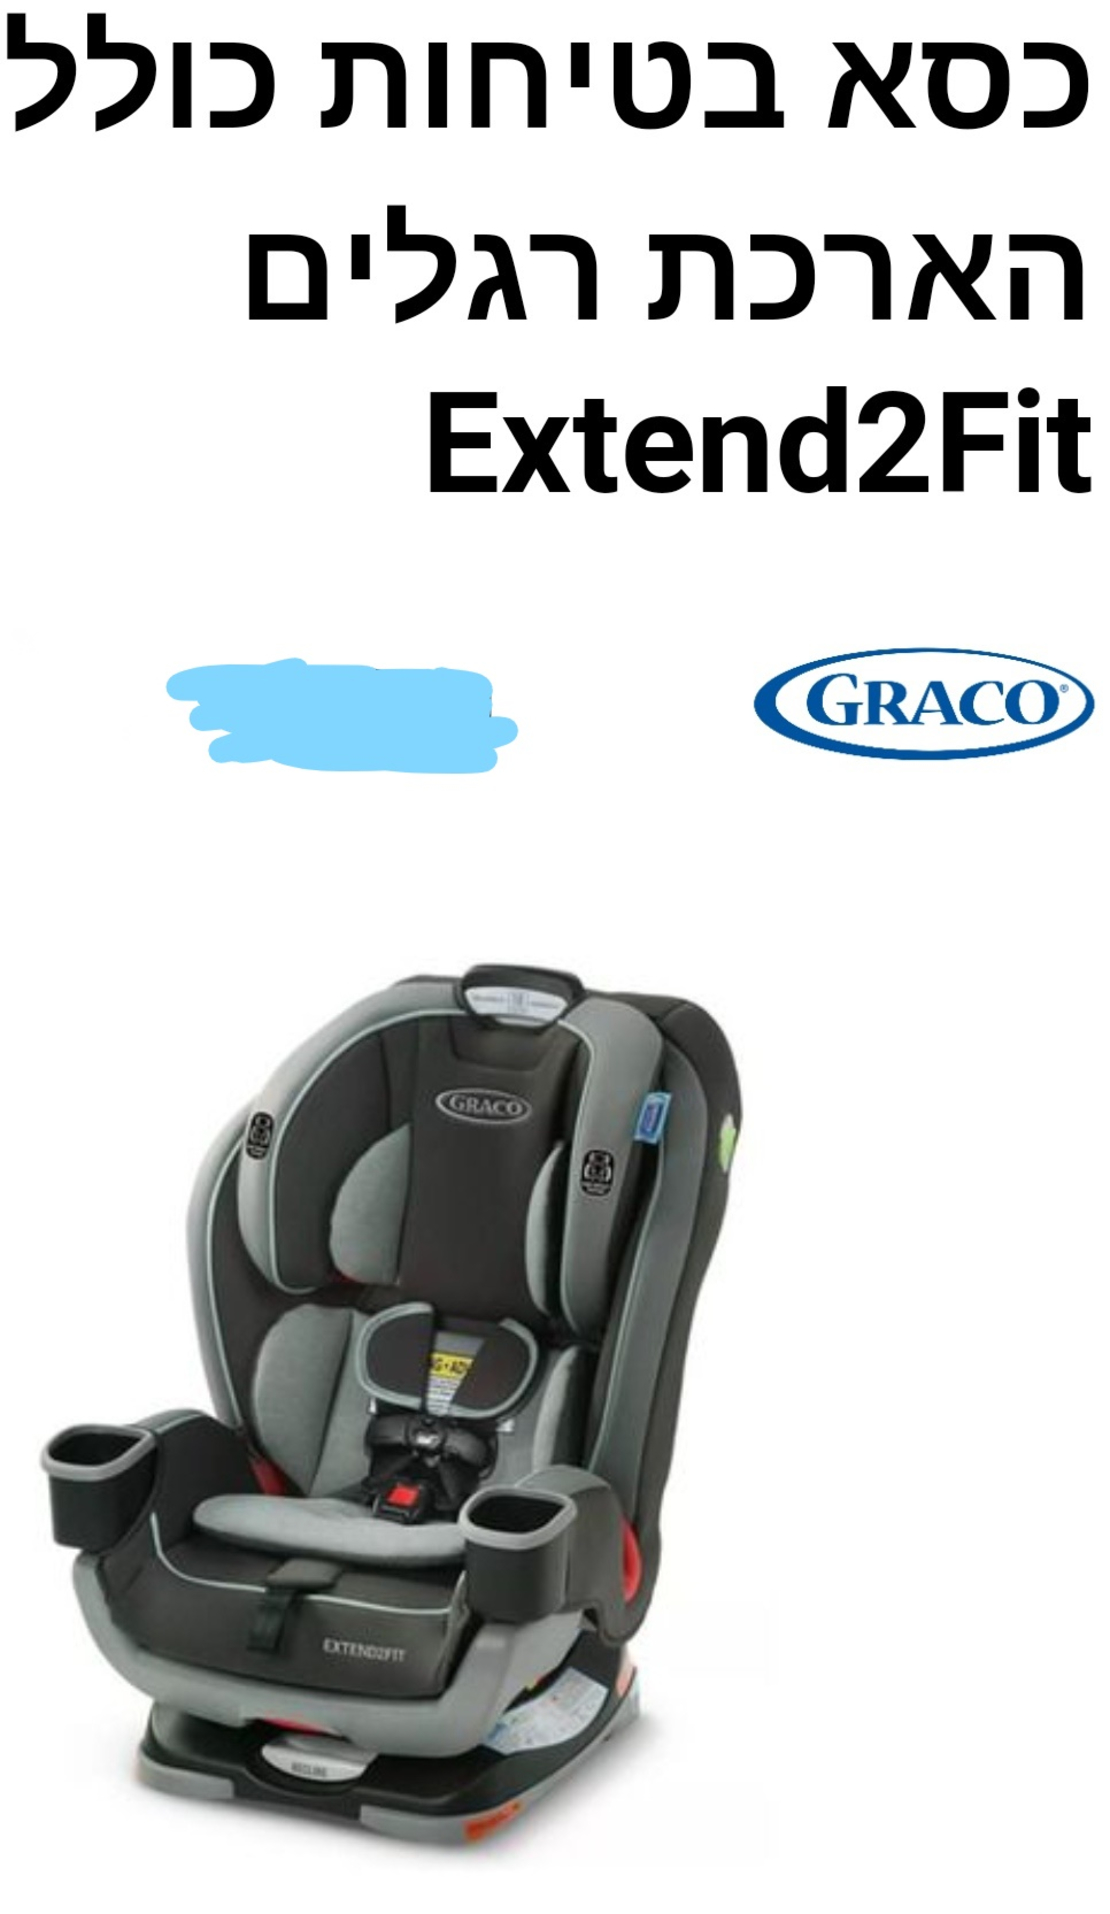 כסא בטיחות - גרקו - כולל הארכת רגלים Extend2Fit